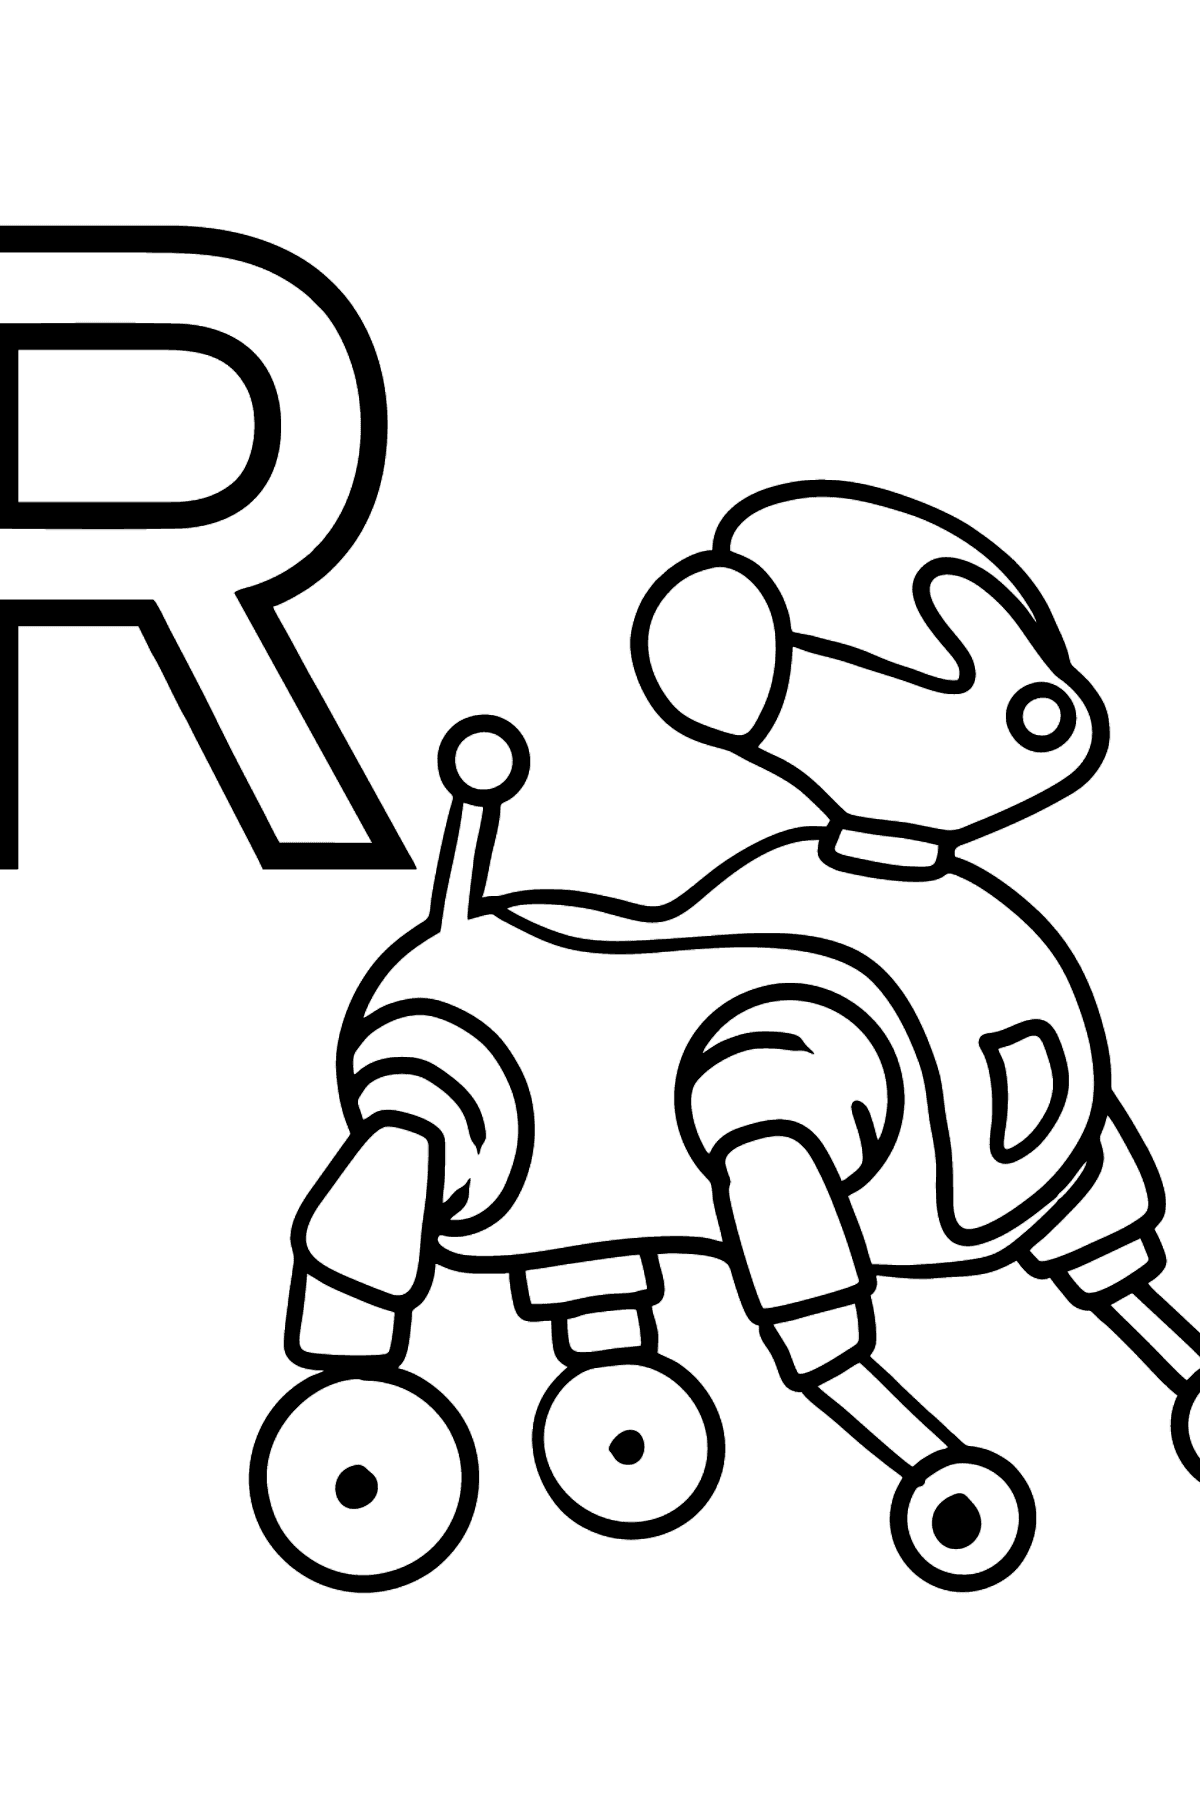 Ausmalbild Englischer Buchstabe R - ROBOT - Malvorlagen für Kinder